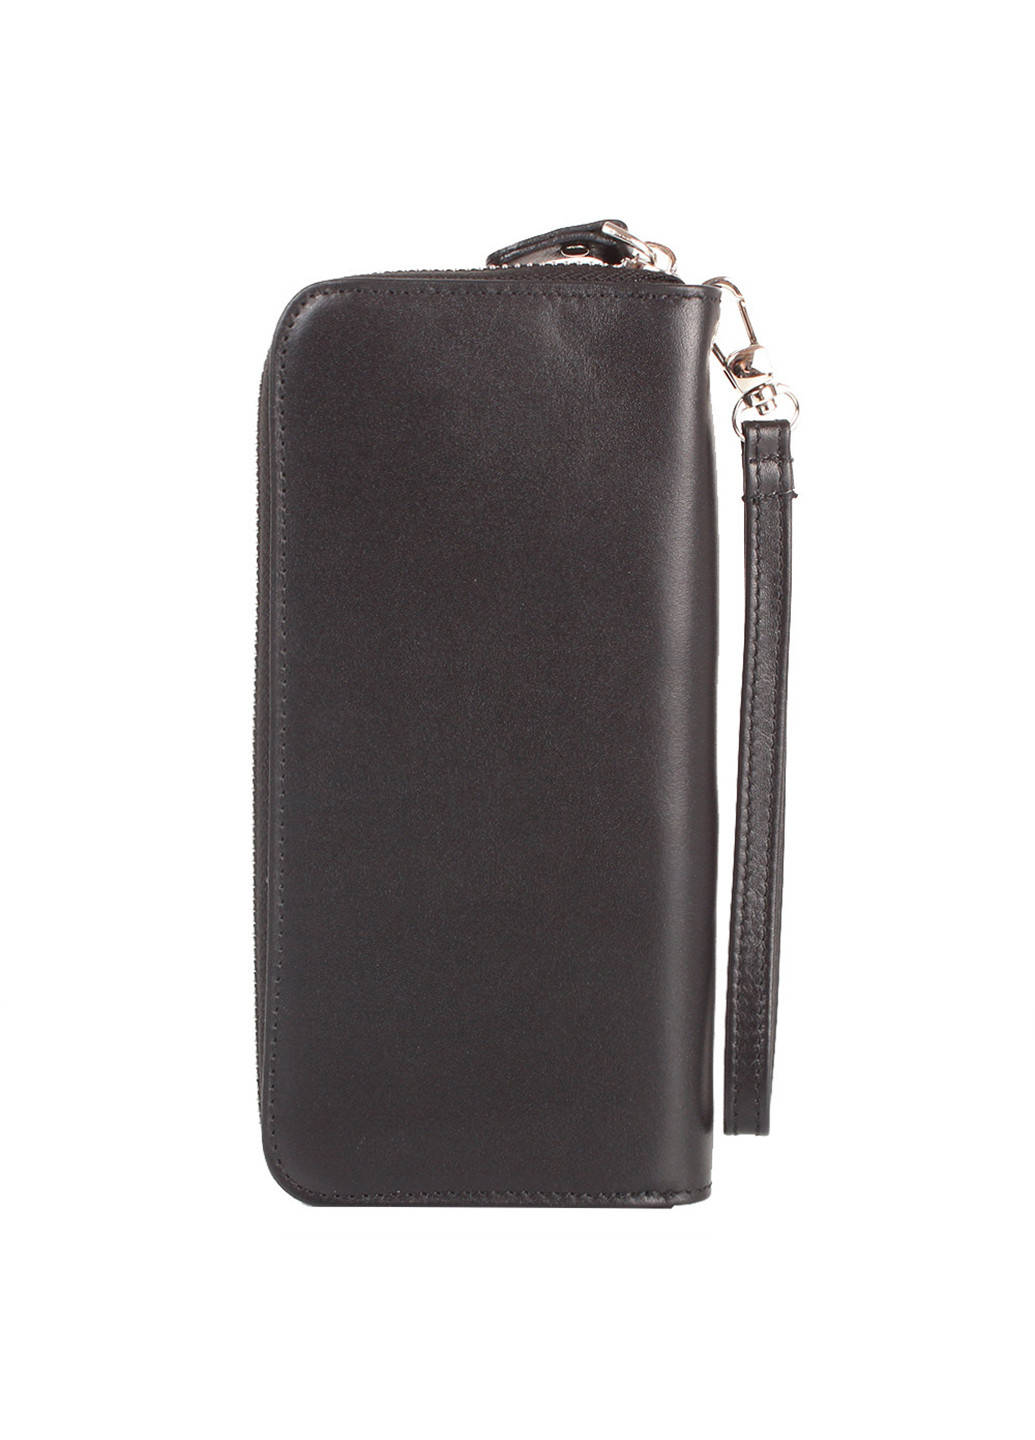 Жіночий шкіряний гаманець 18,5х8,5х3,5 см Canpellini (252130862)